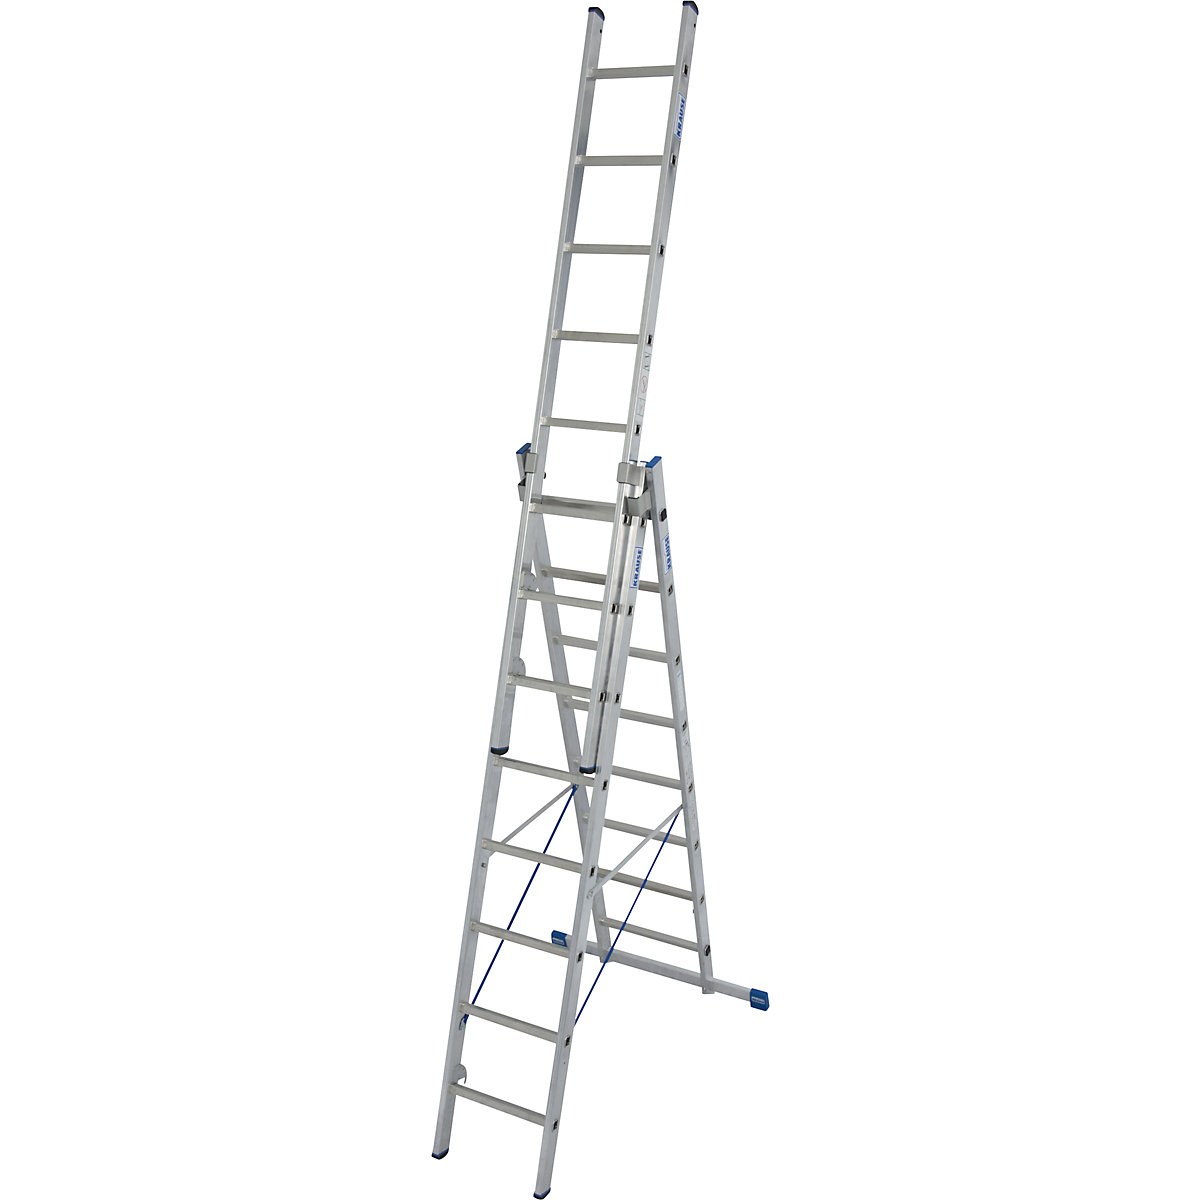 Multi-purpose ladder - KRAUSE